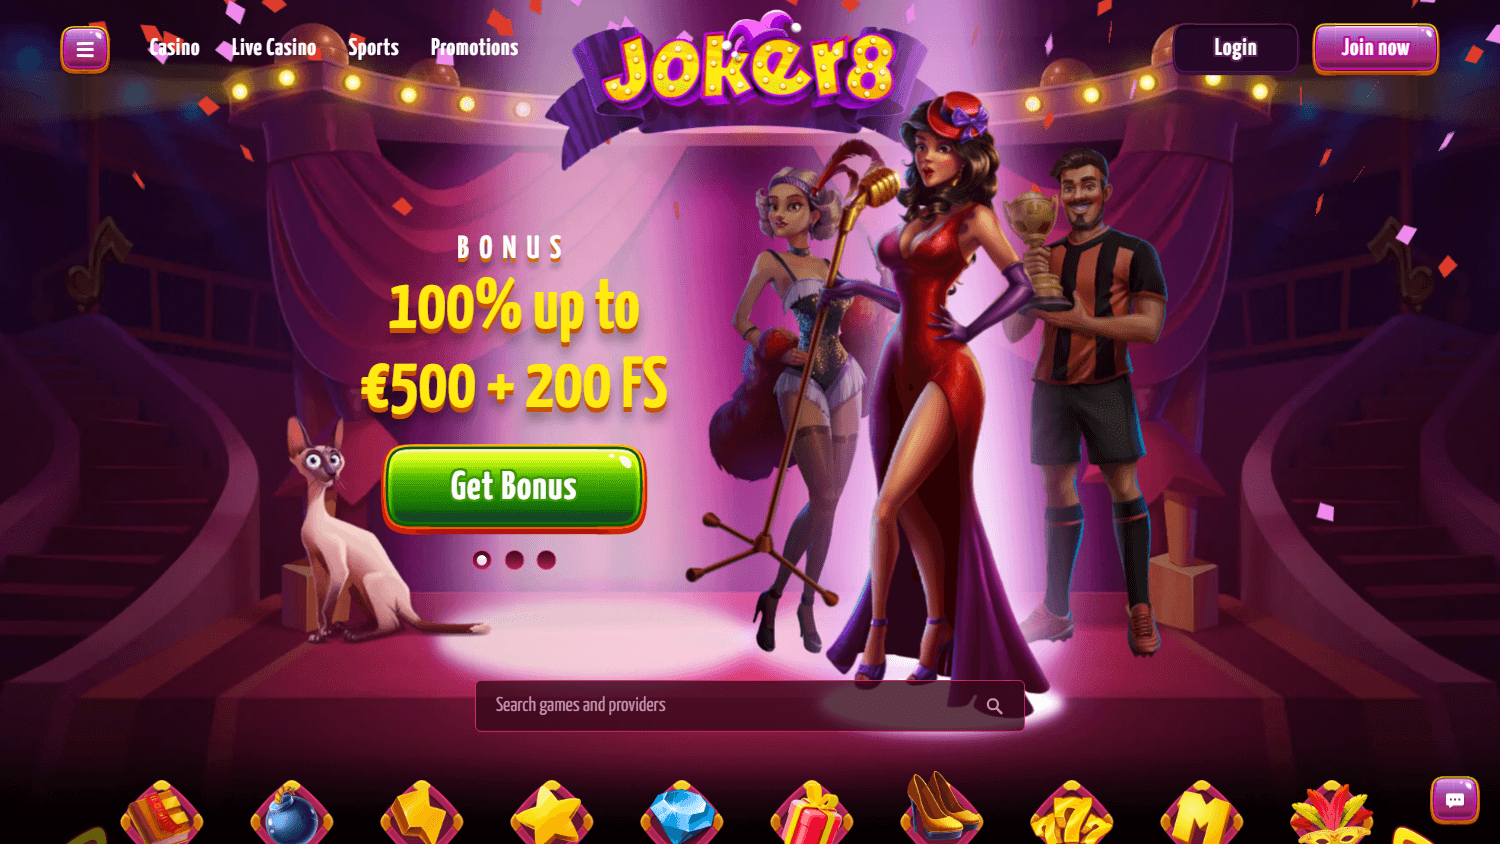 joker8_casino_homepage_desktop